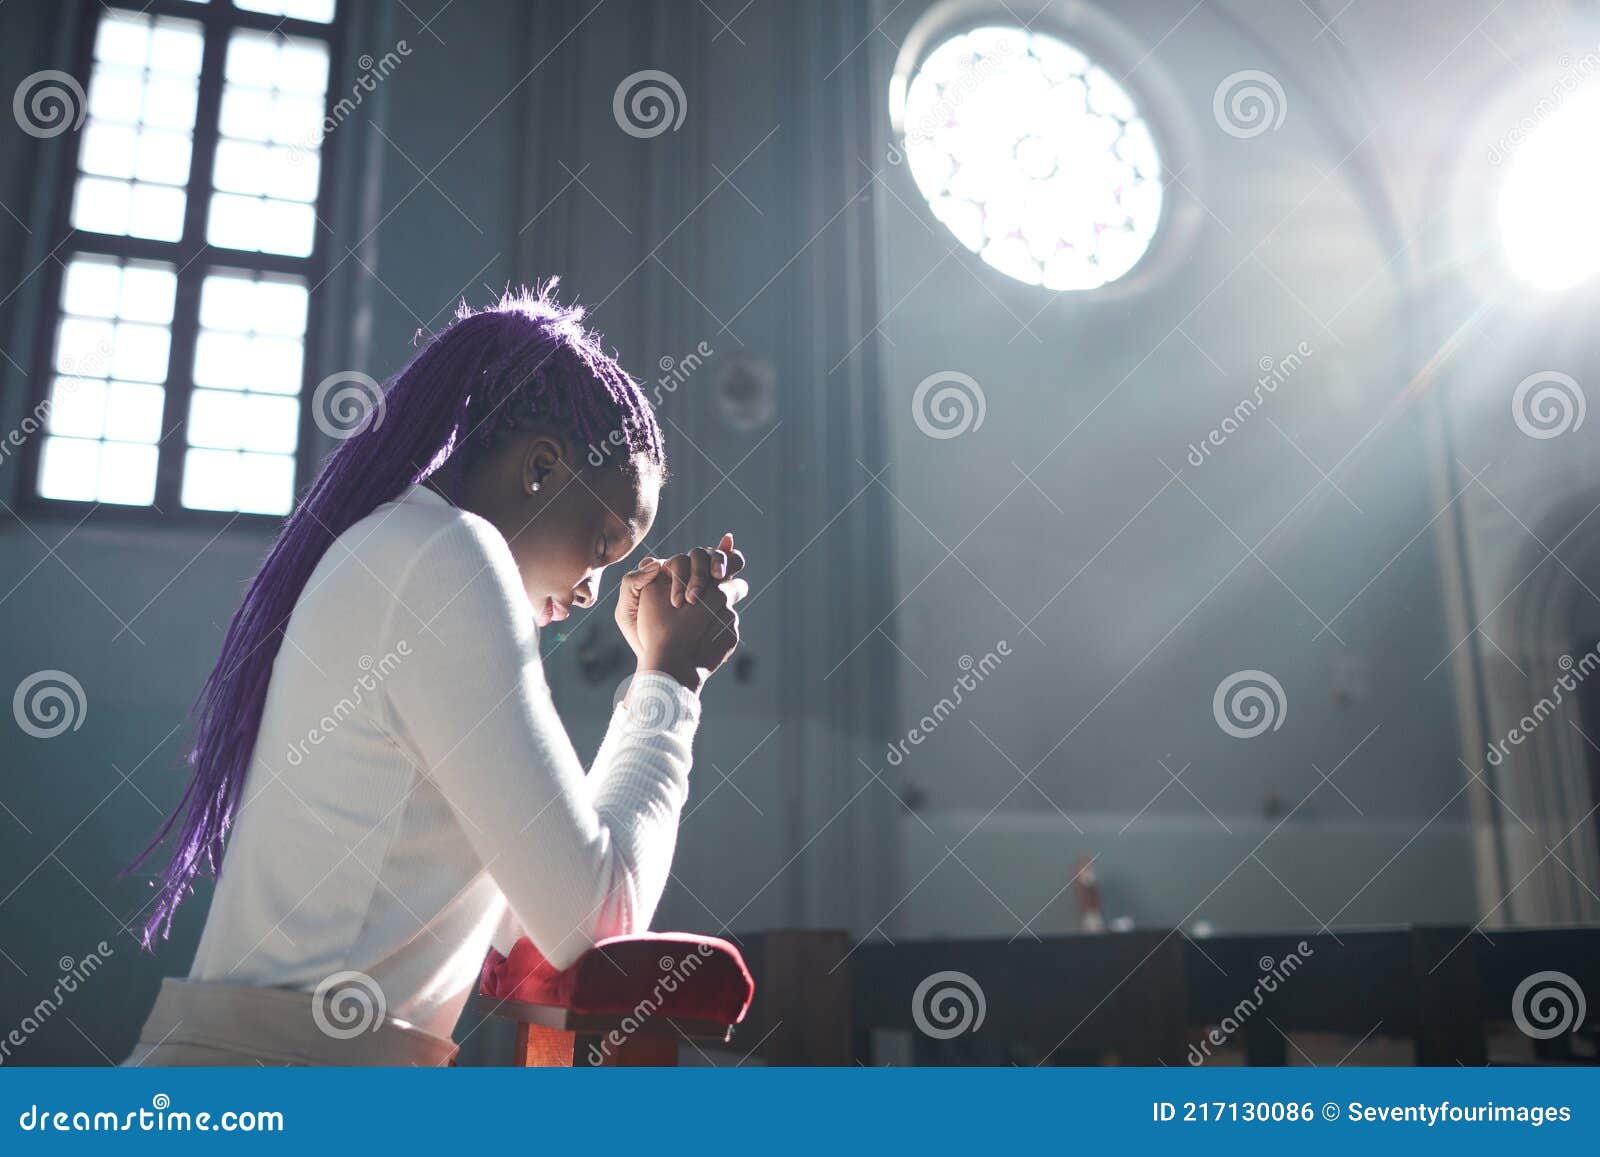 Mujer orando en la iglesia foto de archivo. Imagen de cristiano - 217130086